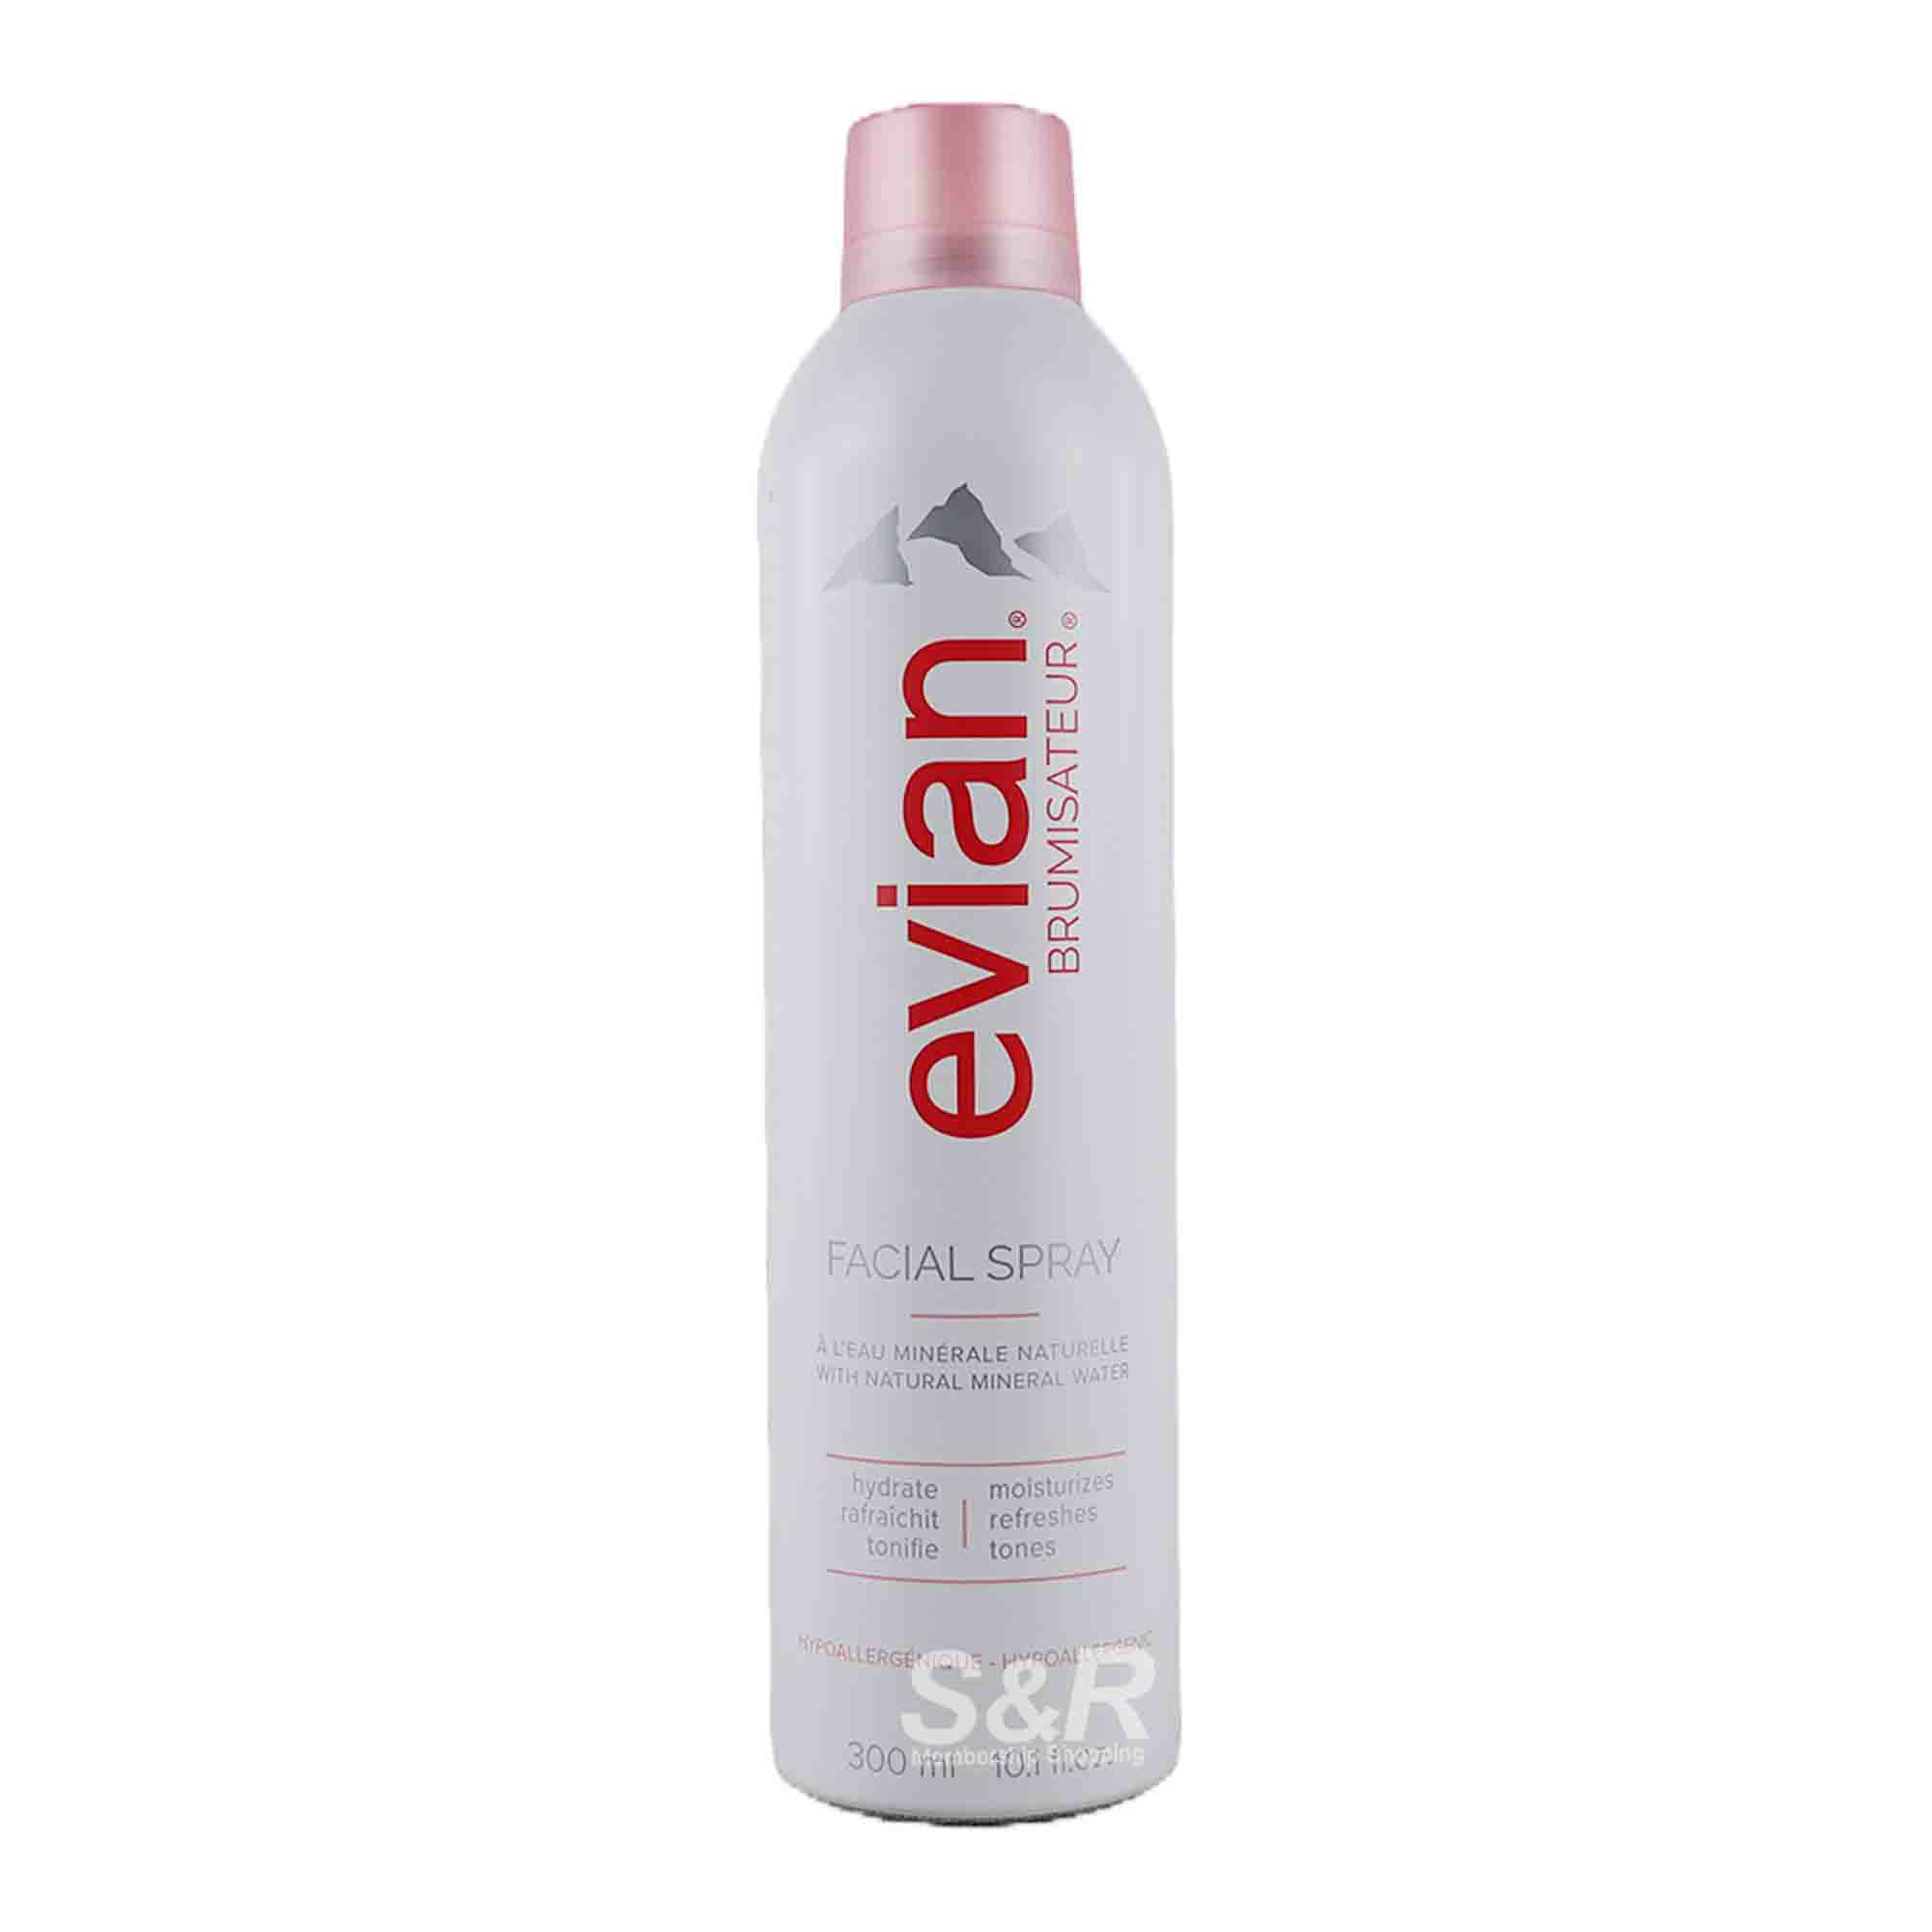 Evian Facial Spray 300mL